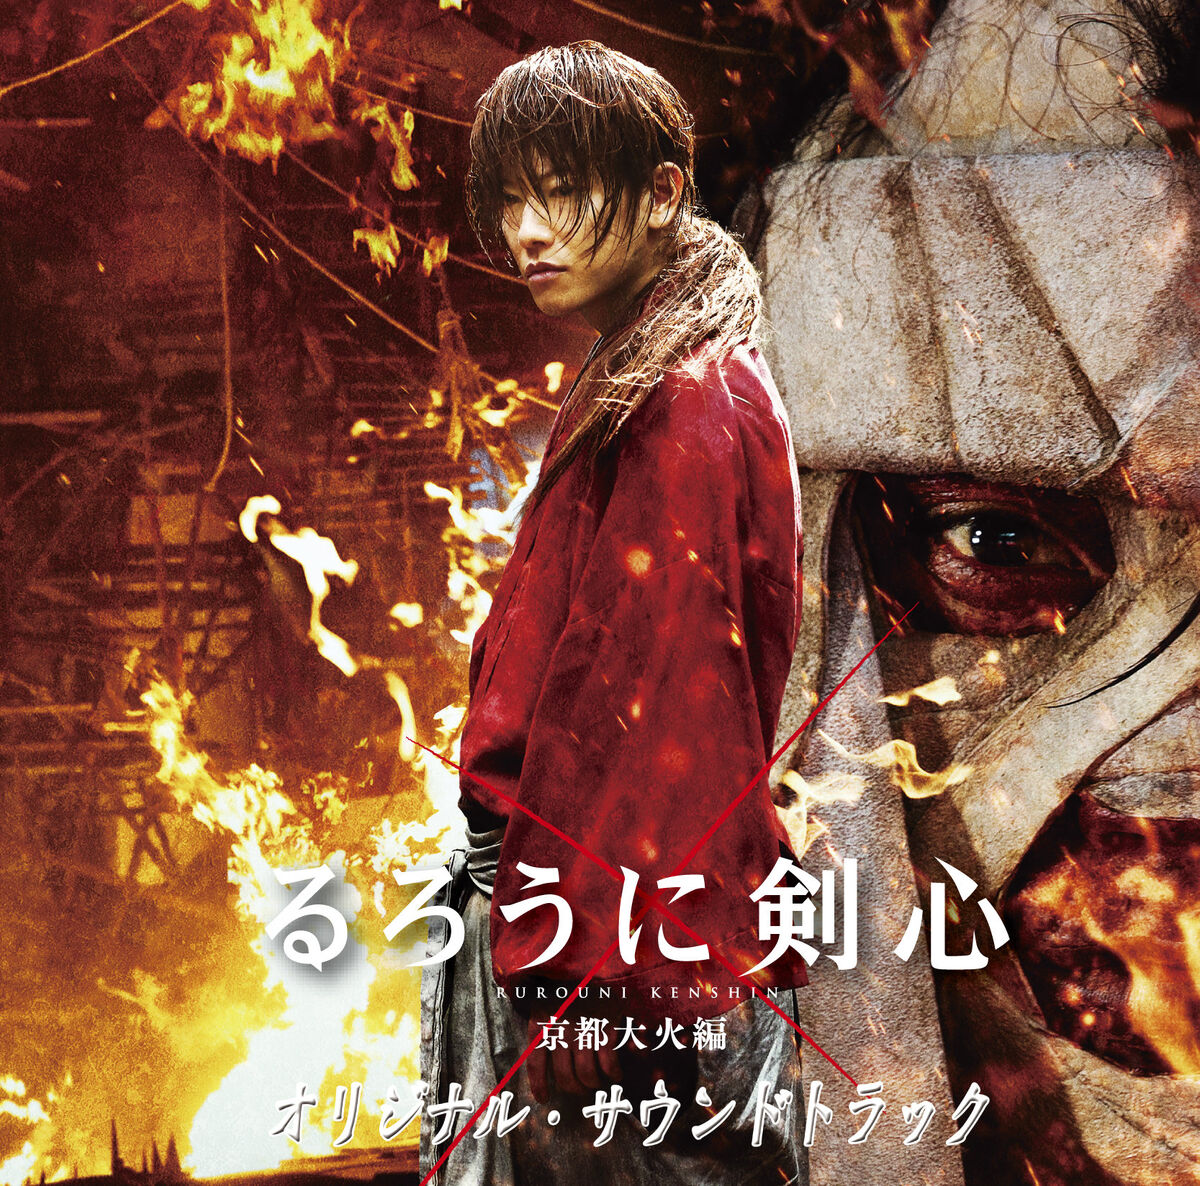 Stream Rurouni Kenshin Kyoto Taika Hen OST Unmei - Meikai No Kodou